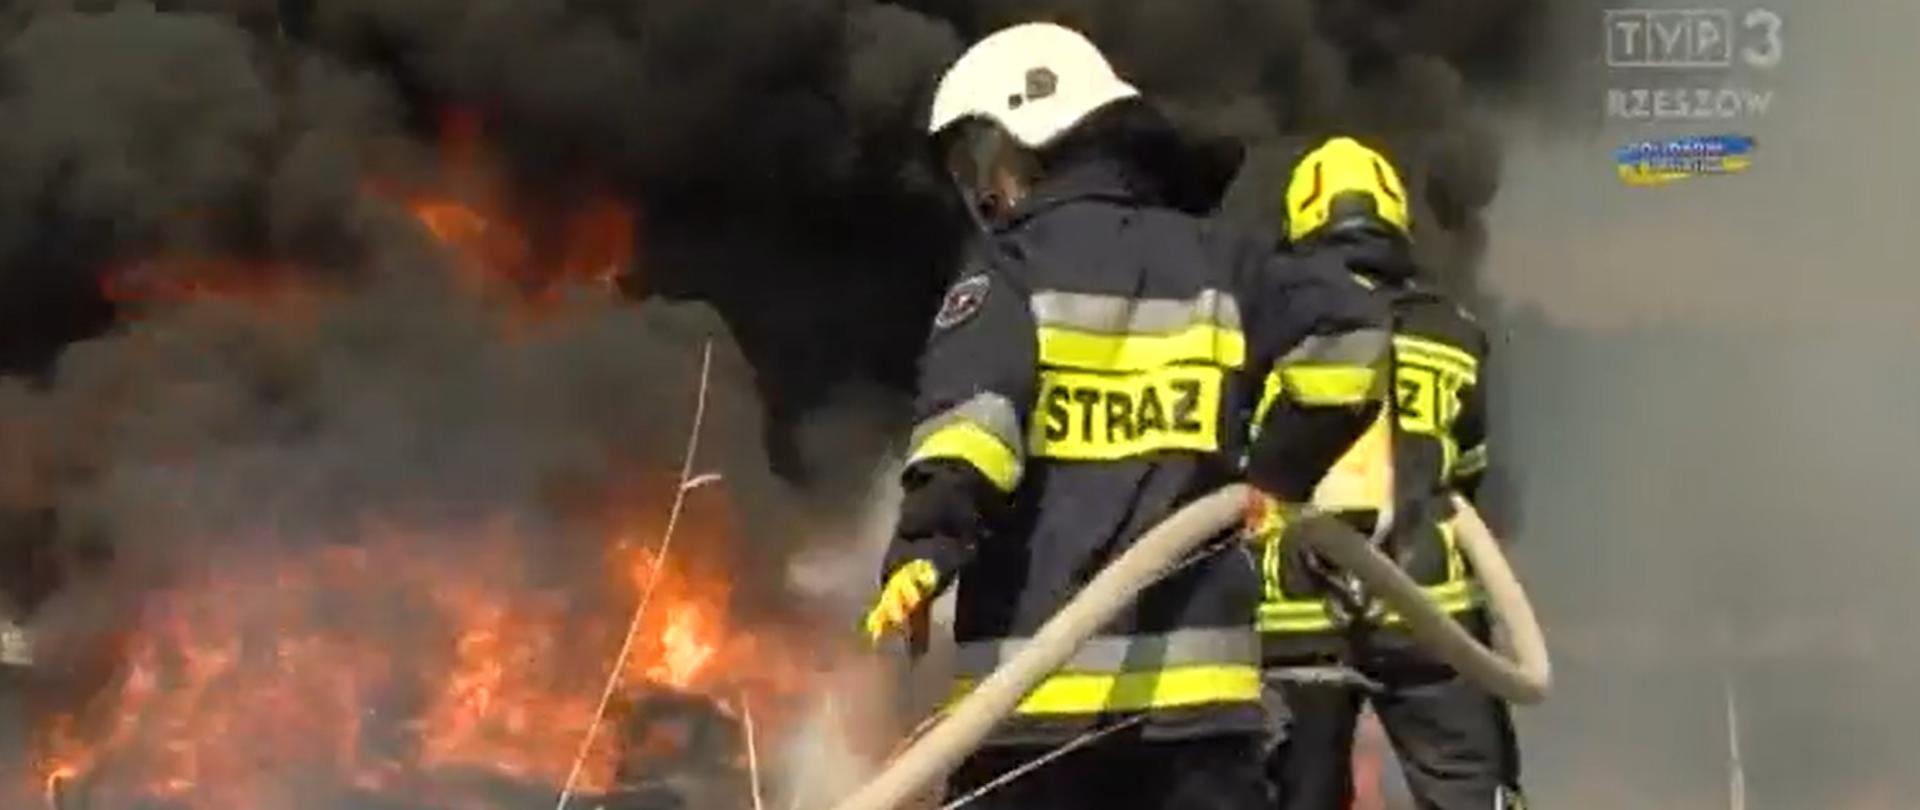 Zdjęcie przedstawia 2 strażaków w ubraniach specjalnych z linią wężową podczas gaszenia pożaru.